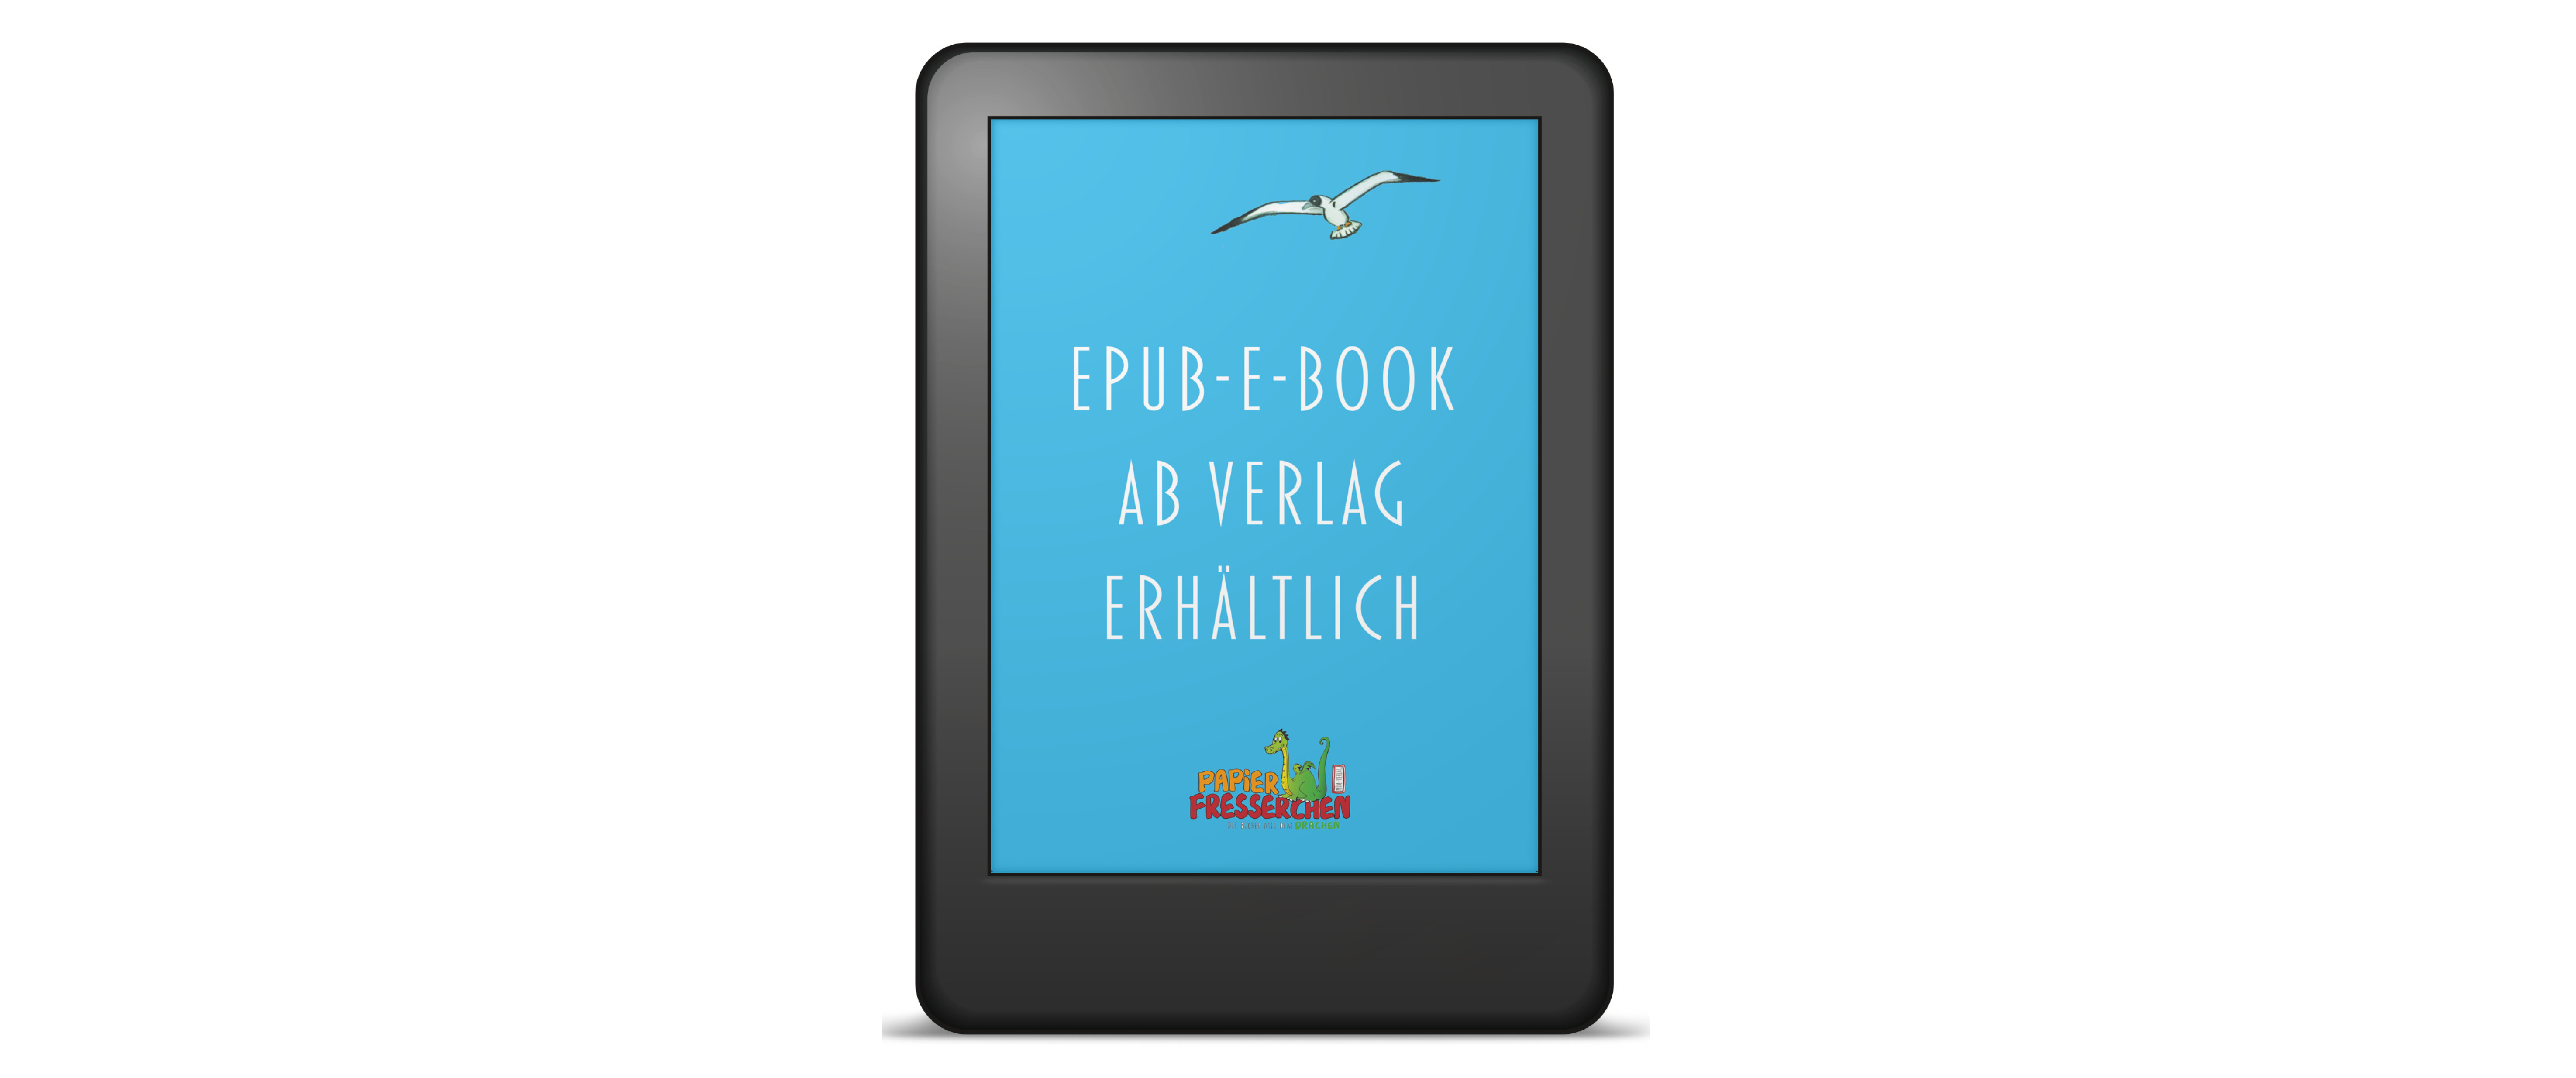 1_e-pub-Ebook